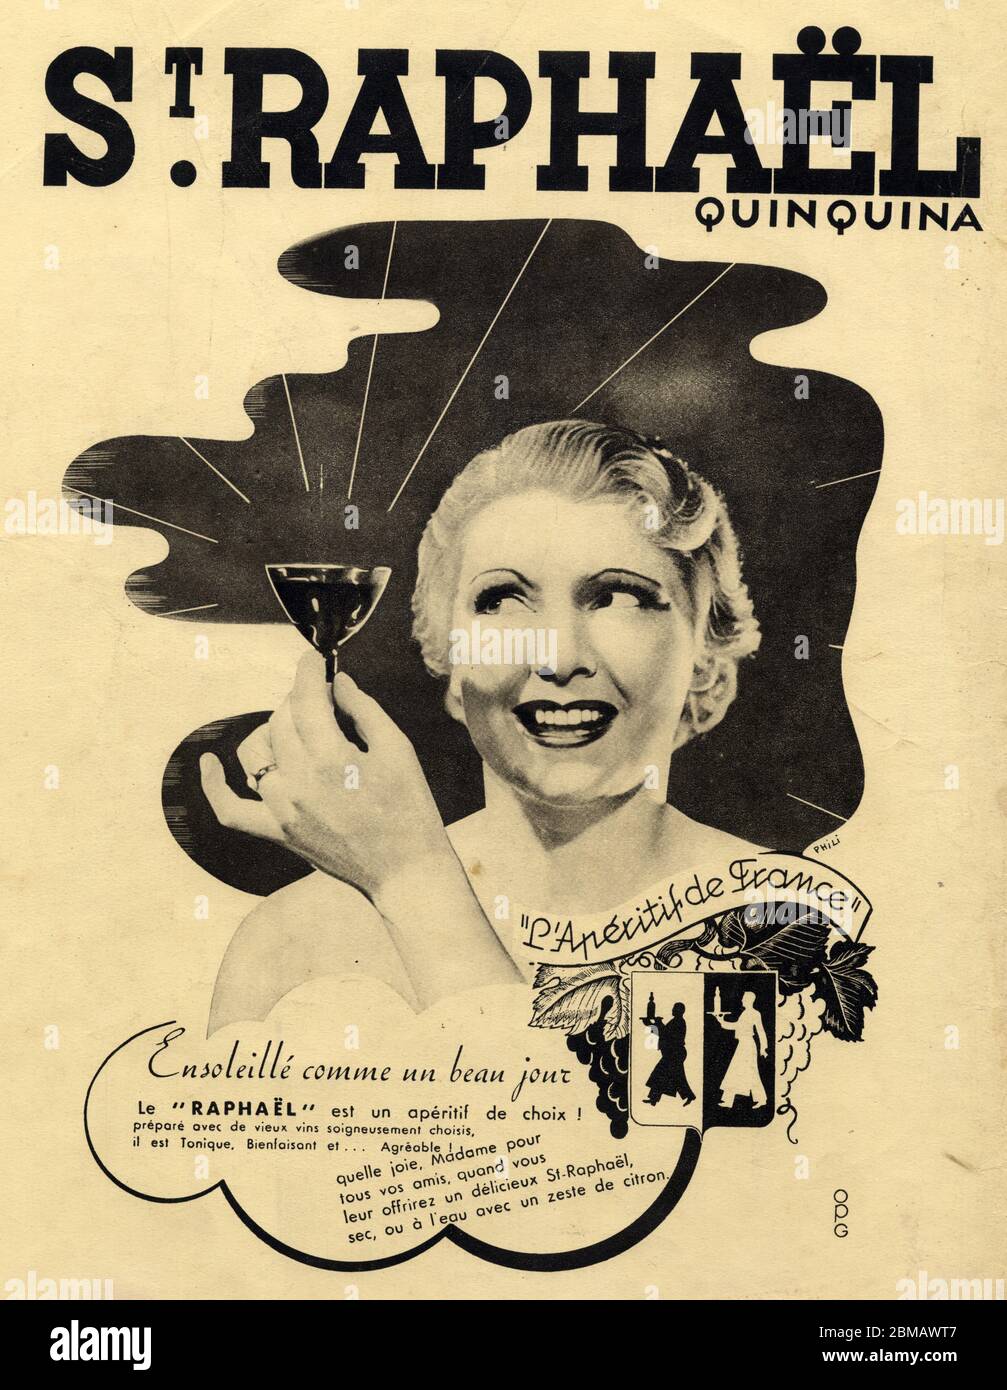 Publicité ancienne. St.Raphael Quinquina. 1937 Stock Photo